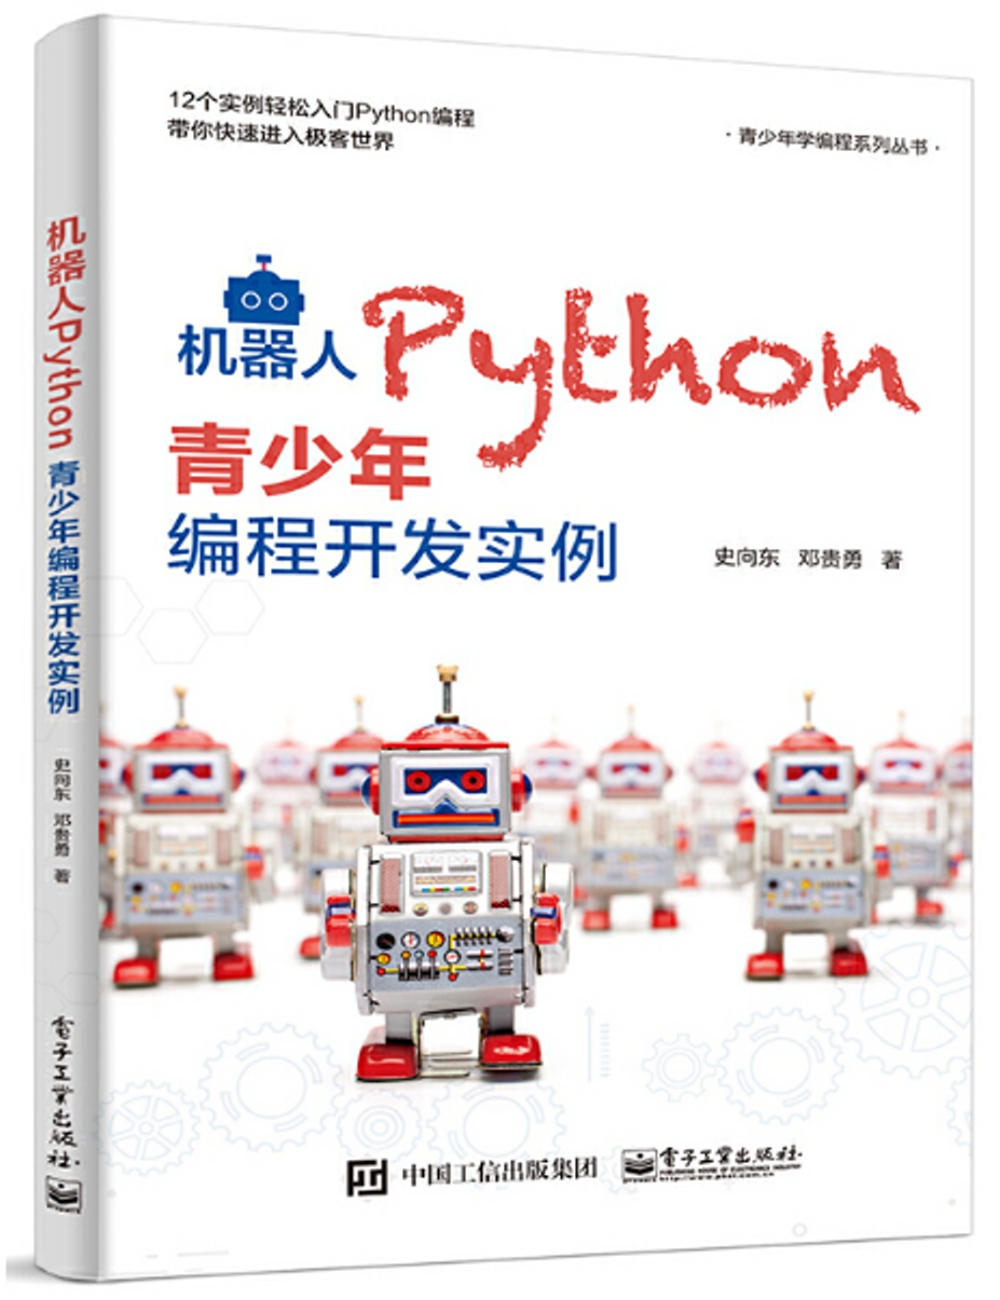 機器人Python青少年編程開發實例